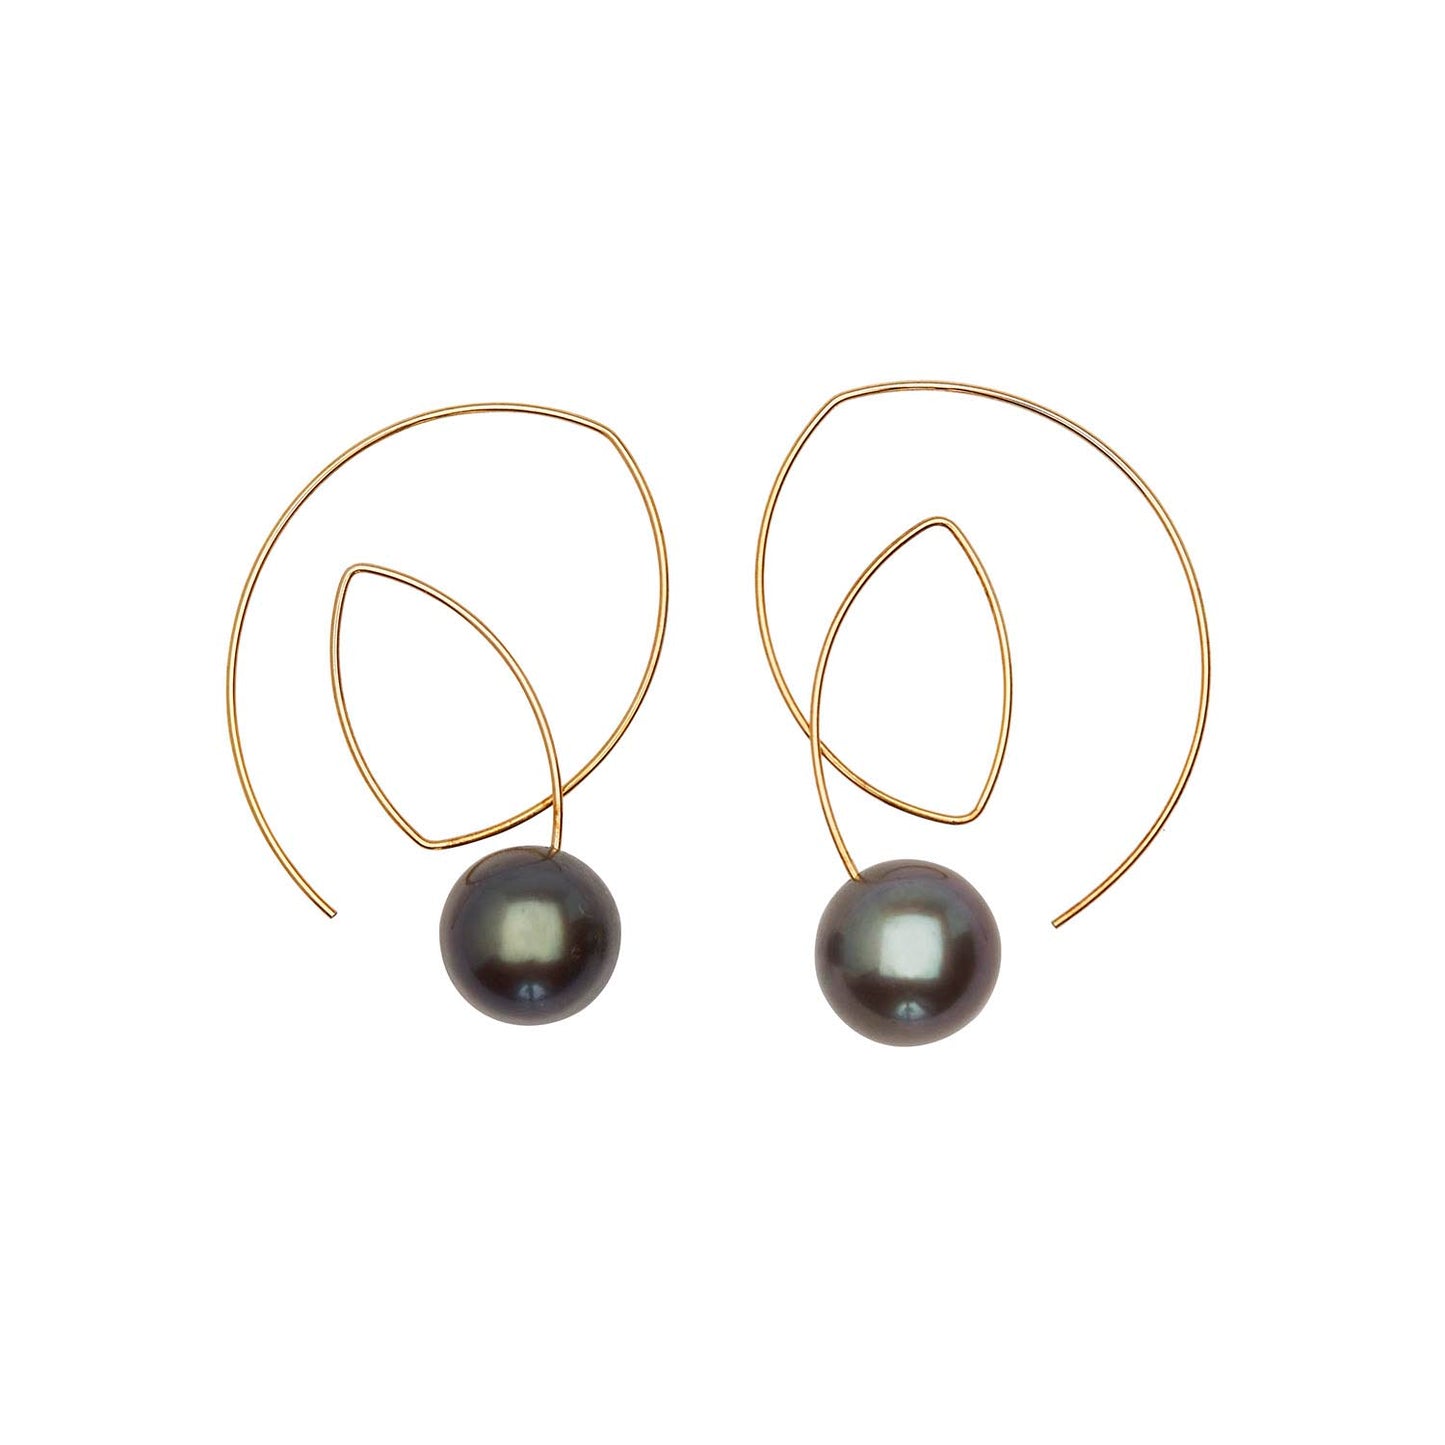 Angled Loop Earrings with Peacock Pearls